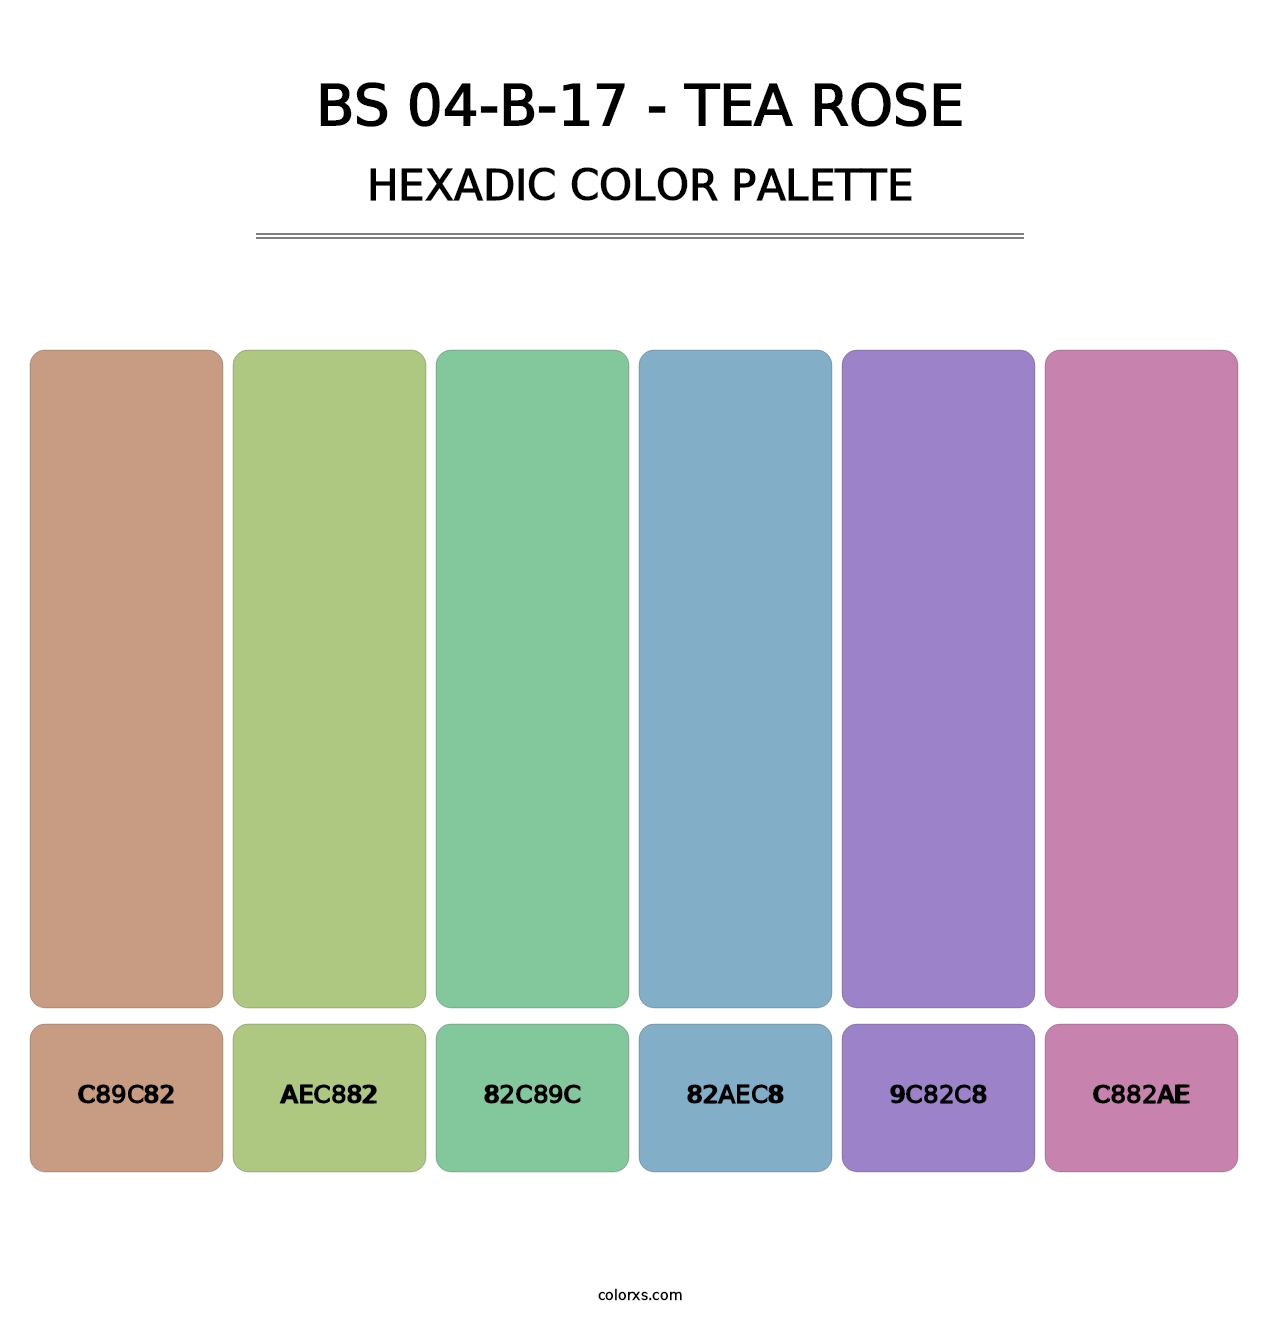 BS 04-B-17 - Tea Rose - Hexadic Color Palette